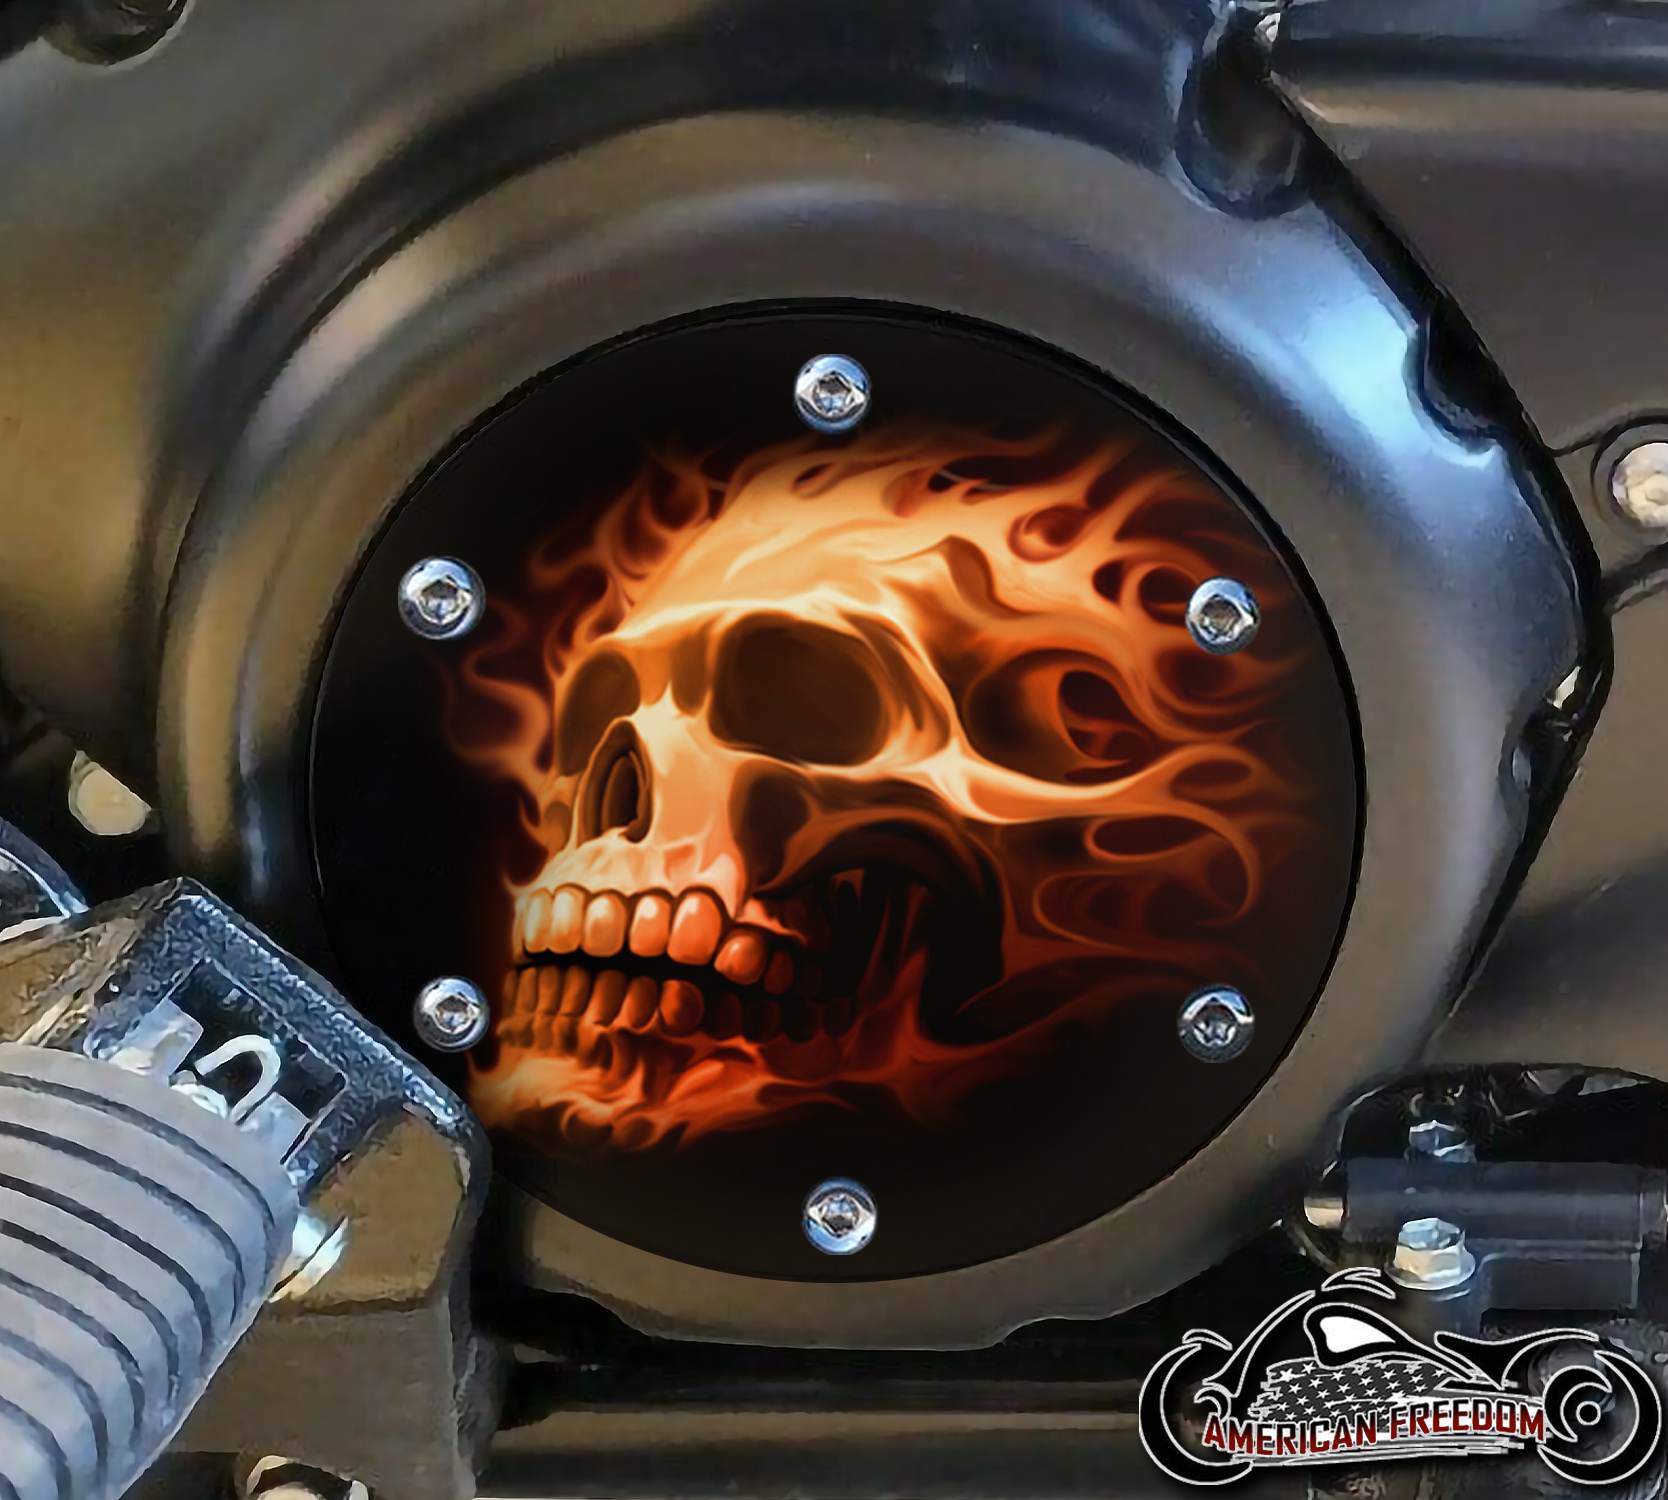 SUZUKI M109R Derby/Engine Cover - Orange Fire Skull